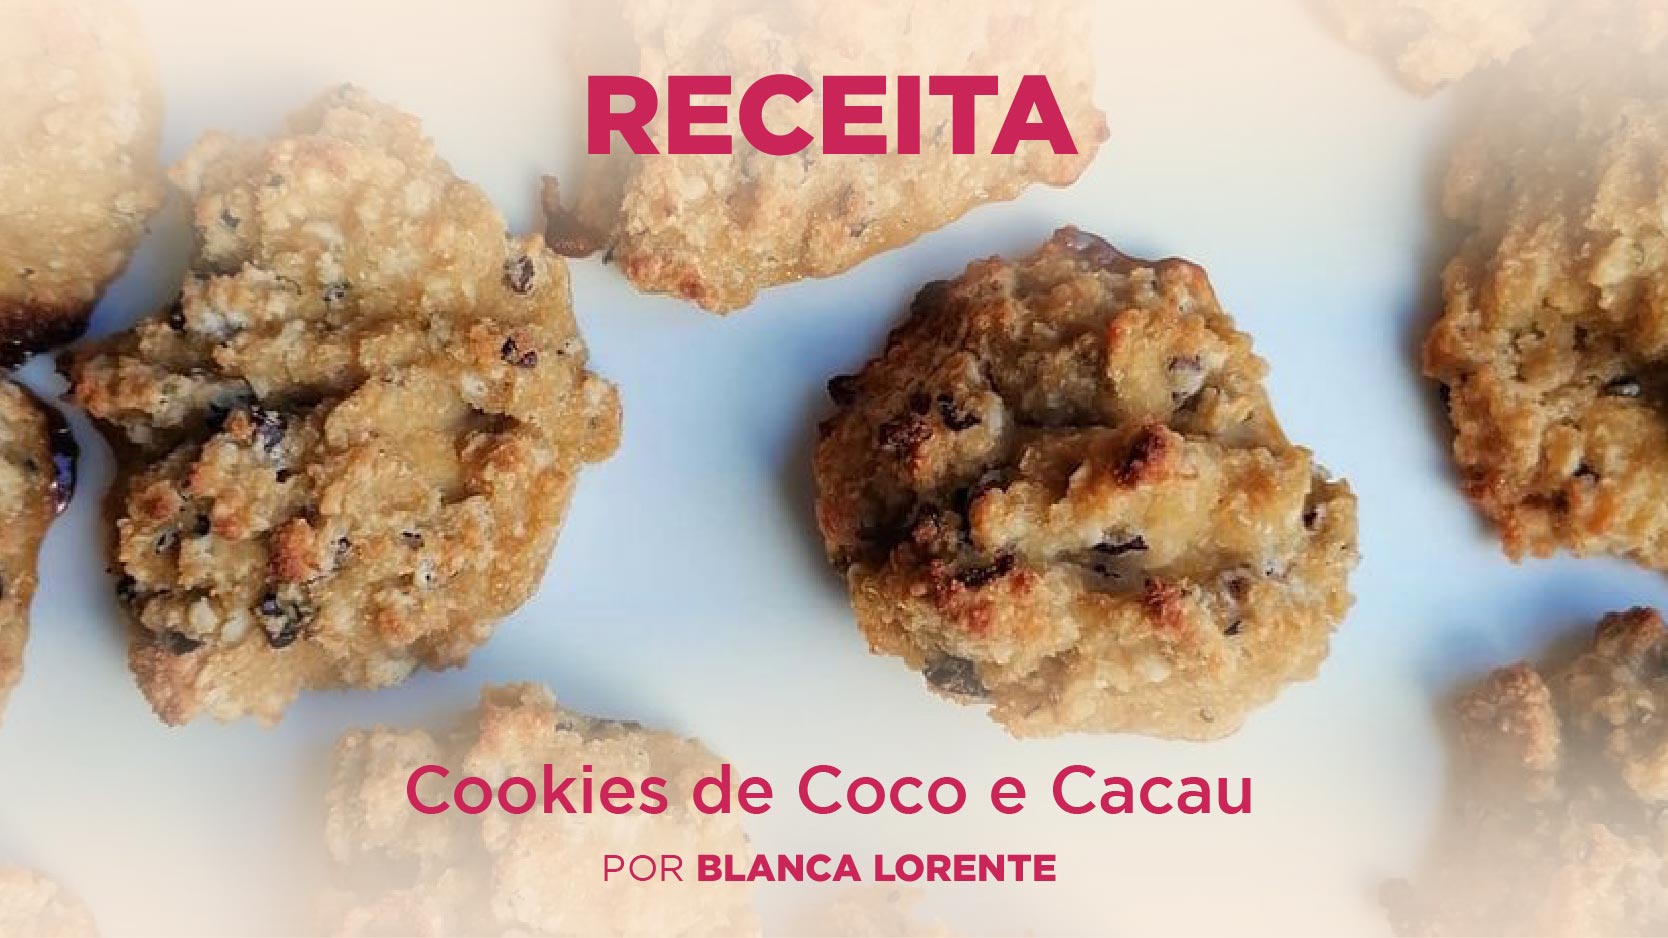 Cookies de Coco e Cacau